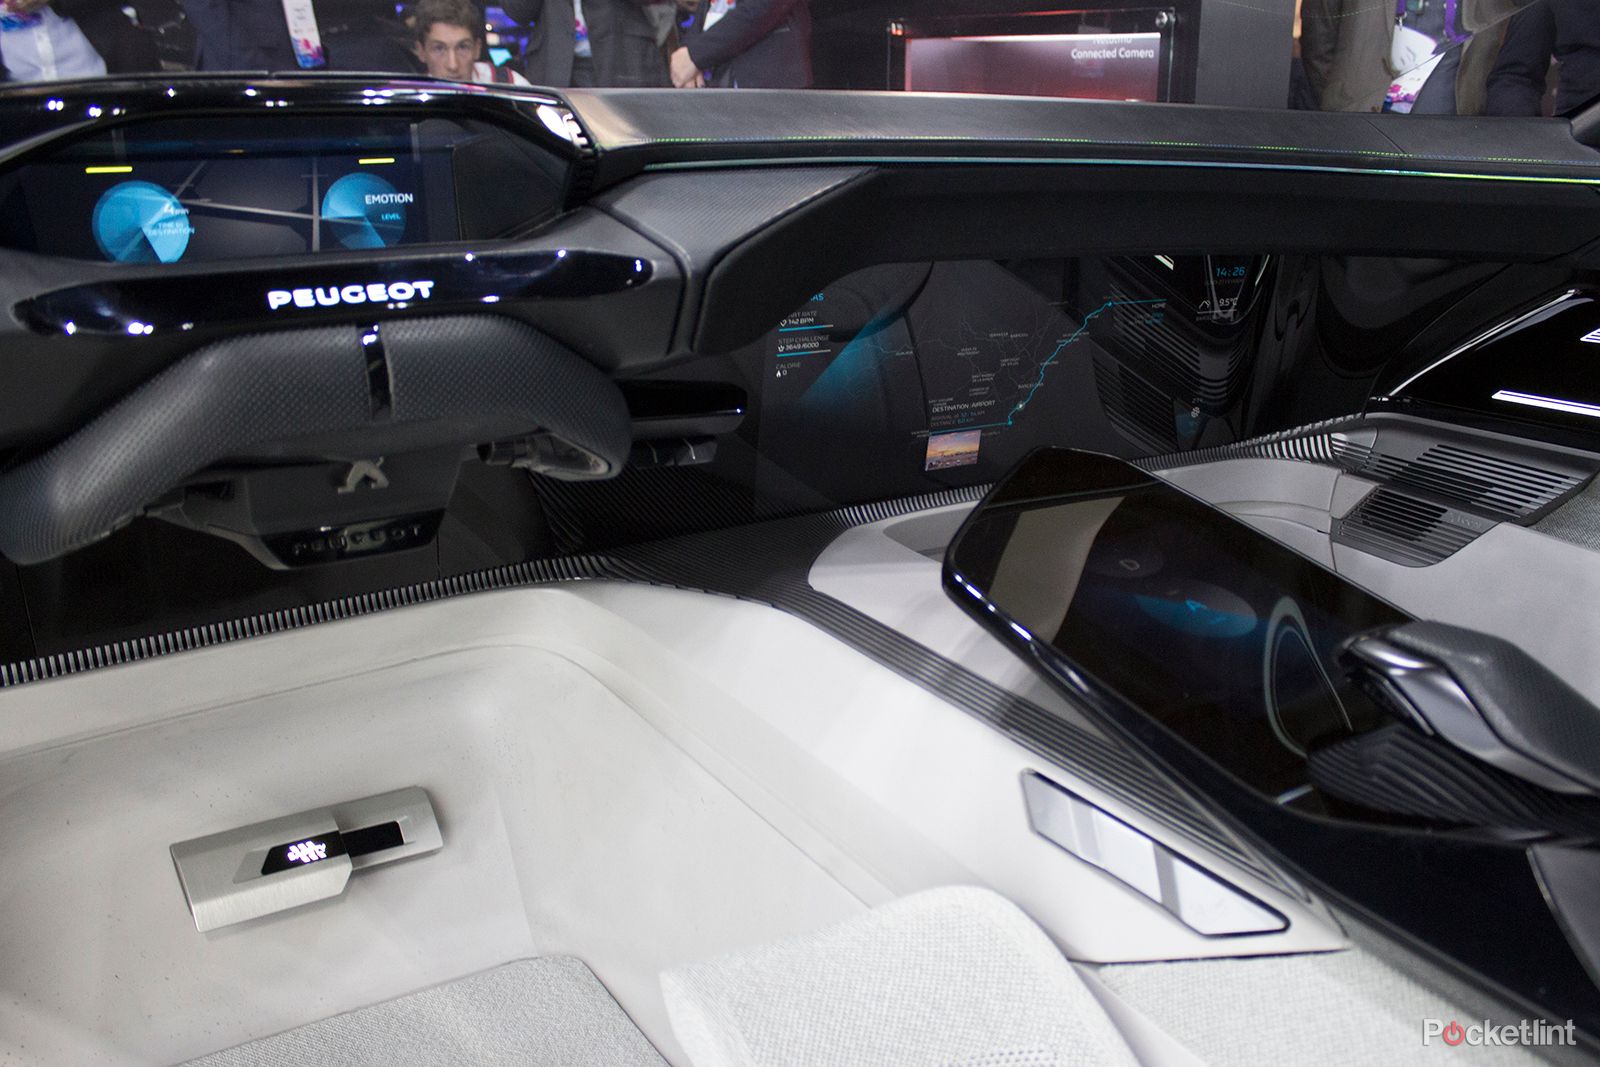 stunning instinct concept car shows peugeot s vision of an autonomous driving future image 3